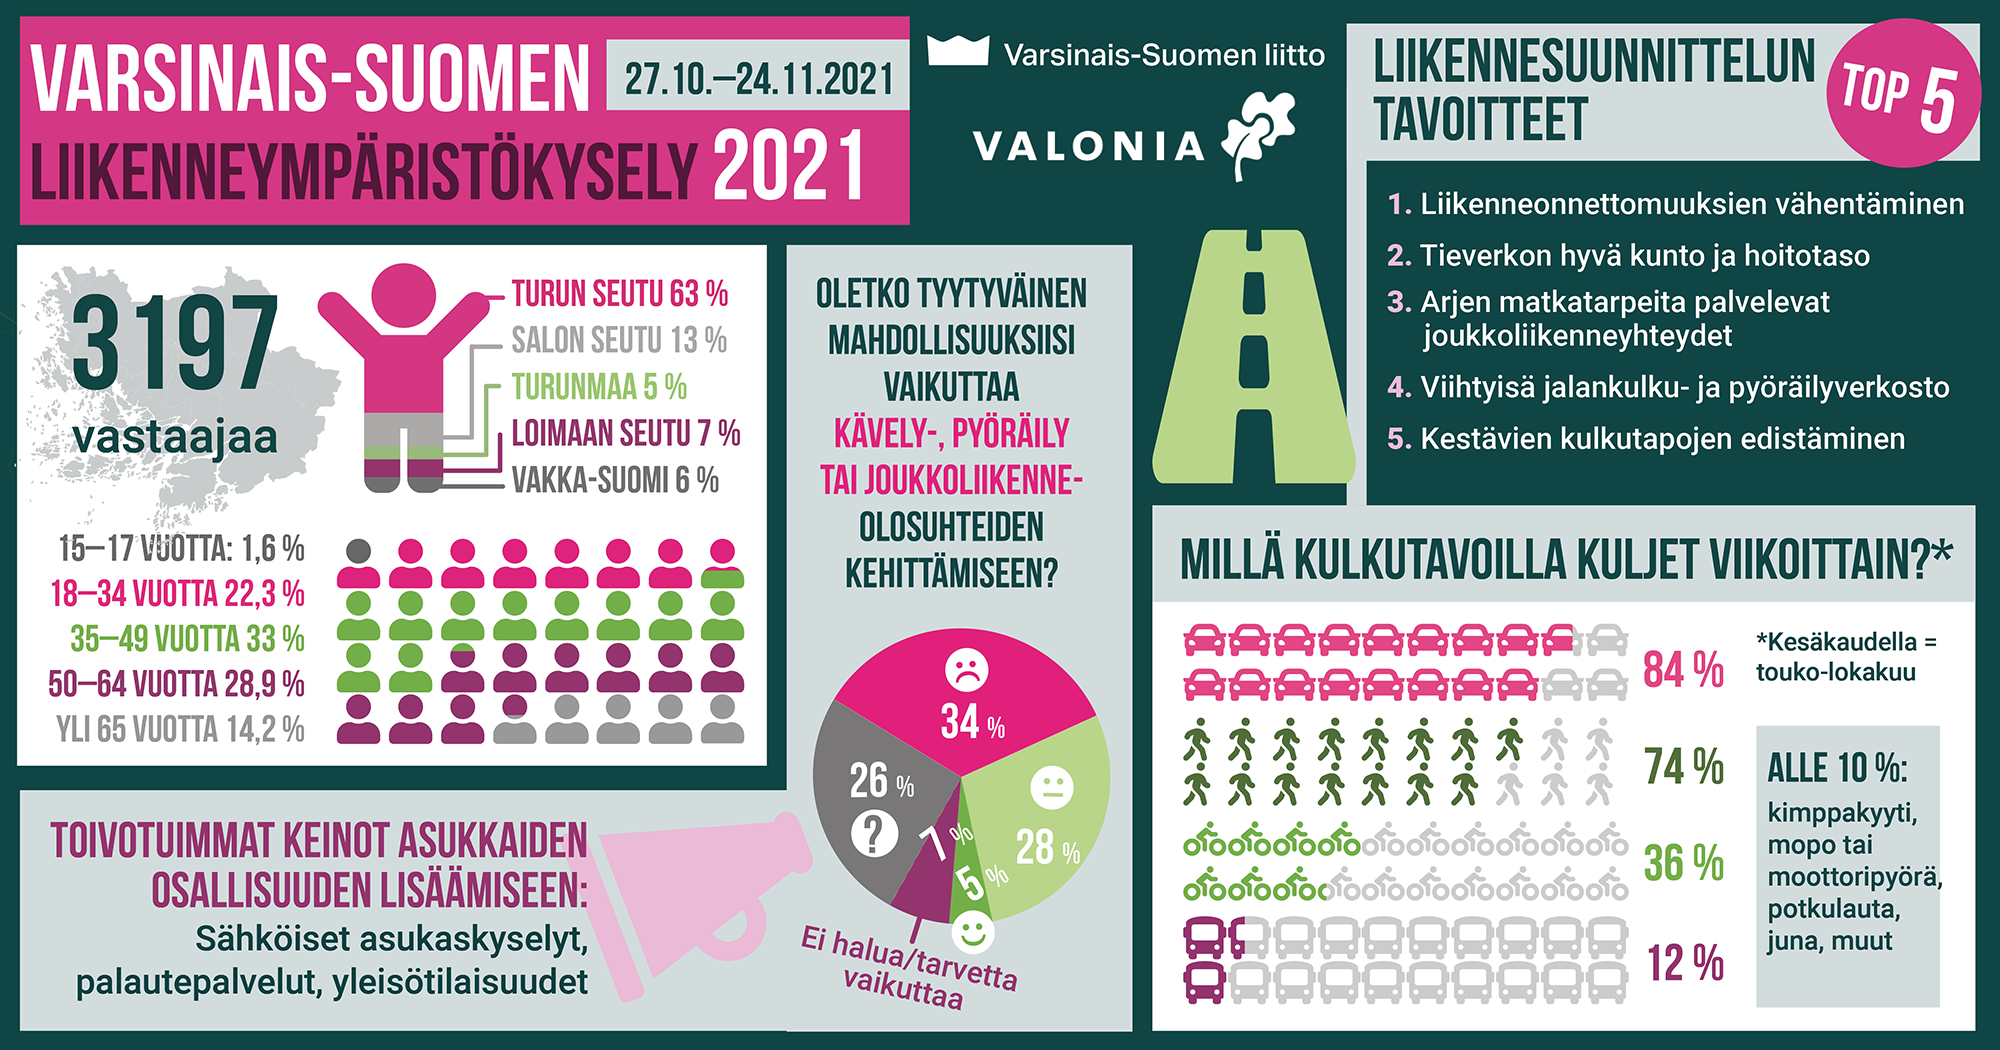 Varsinais-Suomen liikenneympäristökysely